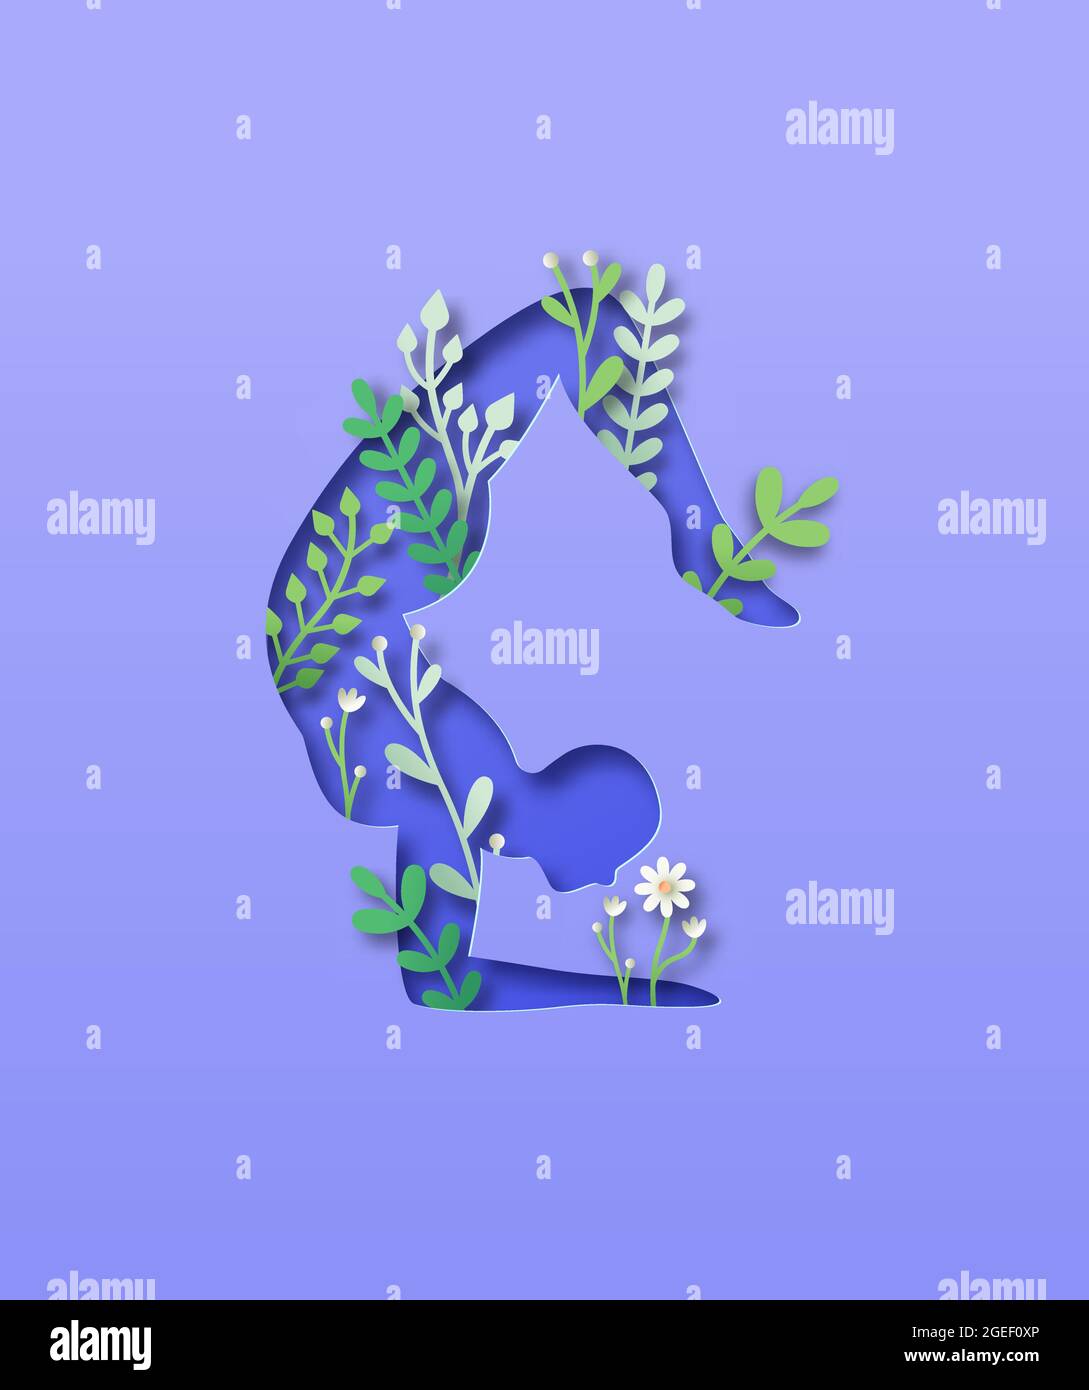 Papercut Mann Körper Silhouette tun Yoga Pose mit 3d-Papier geschnitten Pflanze Blatt und Blume. Naturverbindungskonzept für einen gesunden Lebensstil oder eine friedliche Rela Stock Vektor